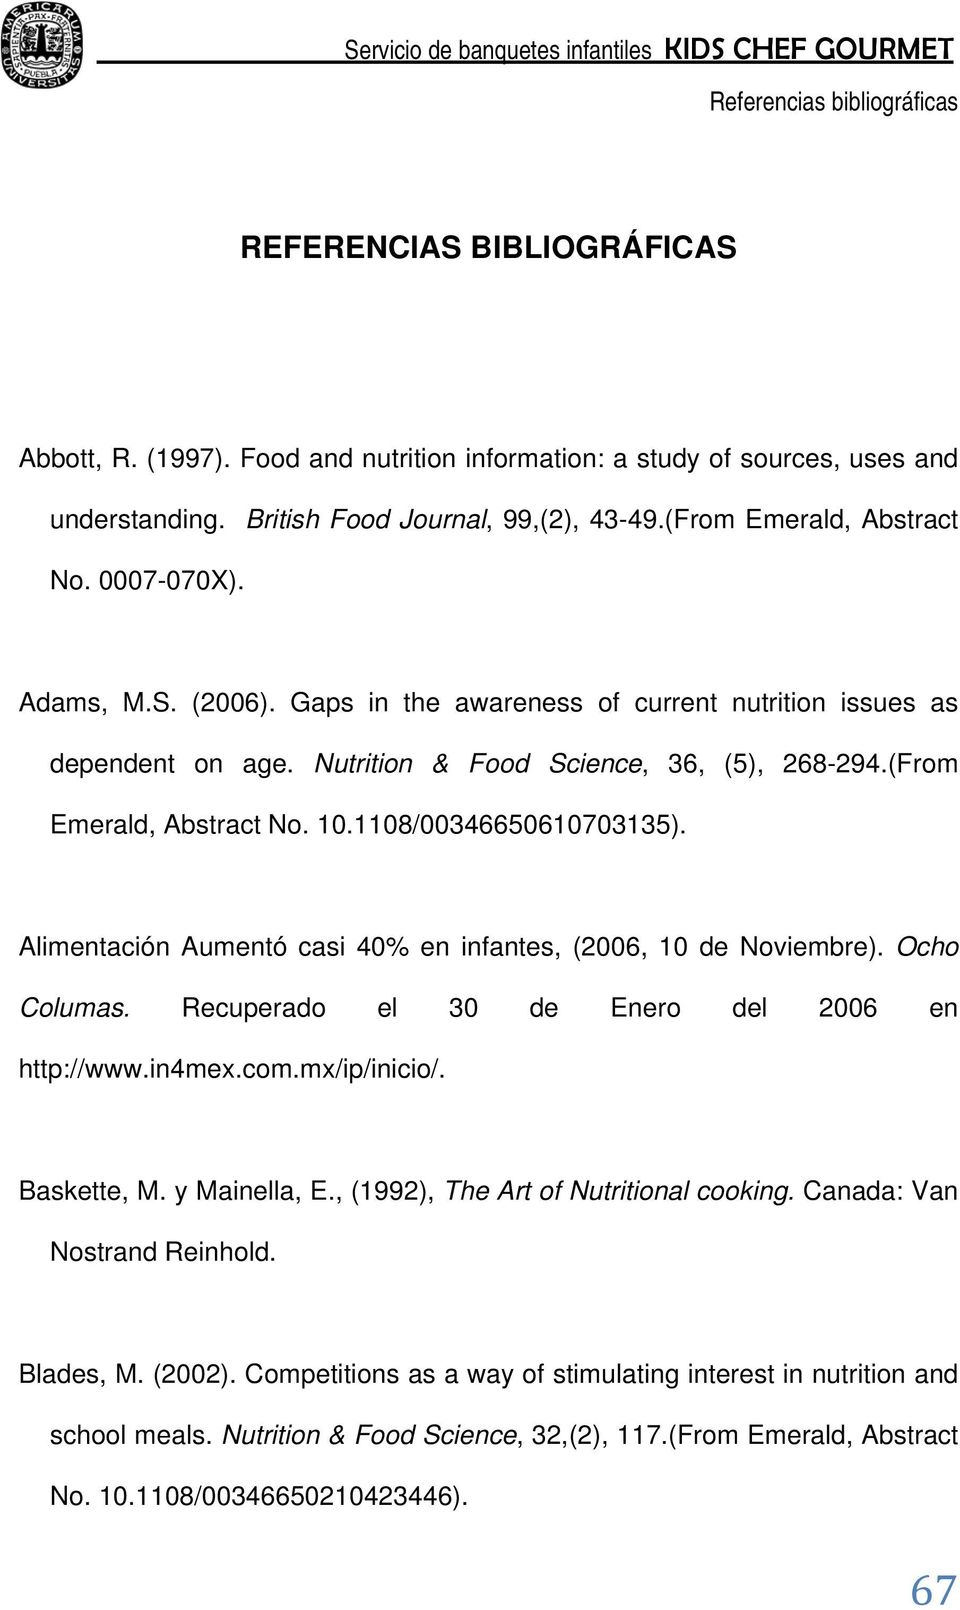 Alimentación Aumentó casi 40% en infantes, (2006, 10 de Noviembre). Ocho Columas. Recuperado el 30 de Enero del 2006 en http://www.in4mex.com.mx/ip/inicio/. Baskette, M. y Mainella, E.